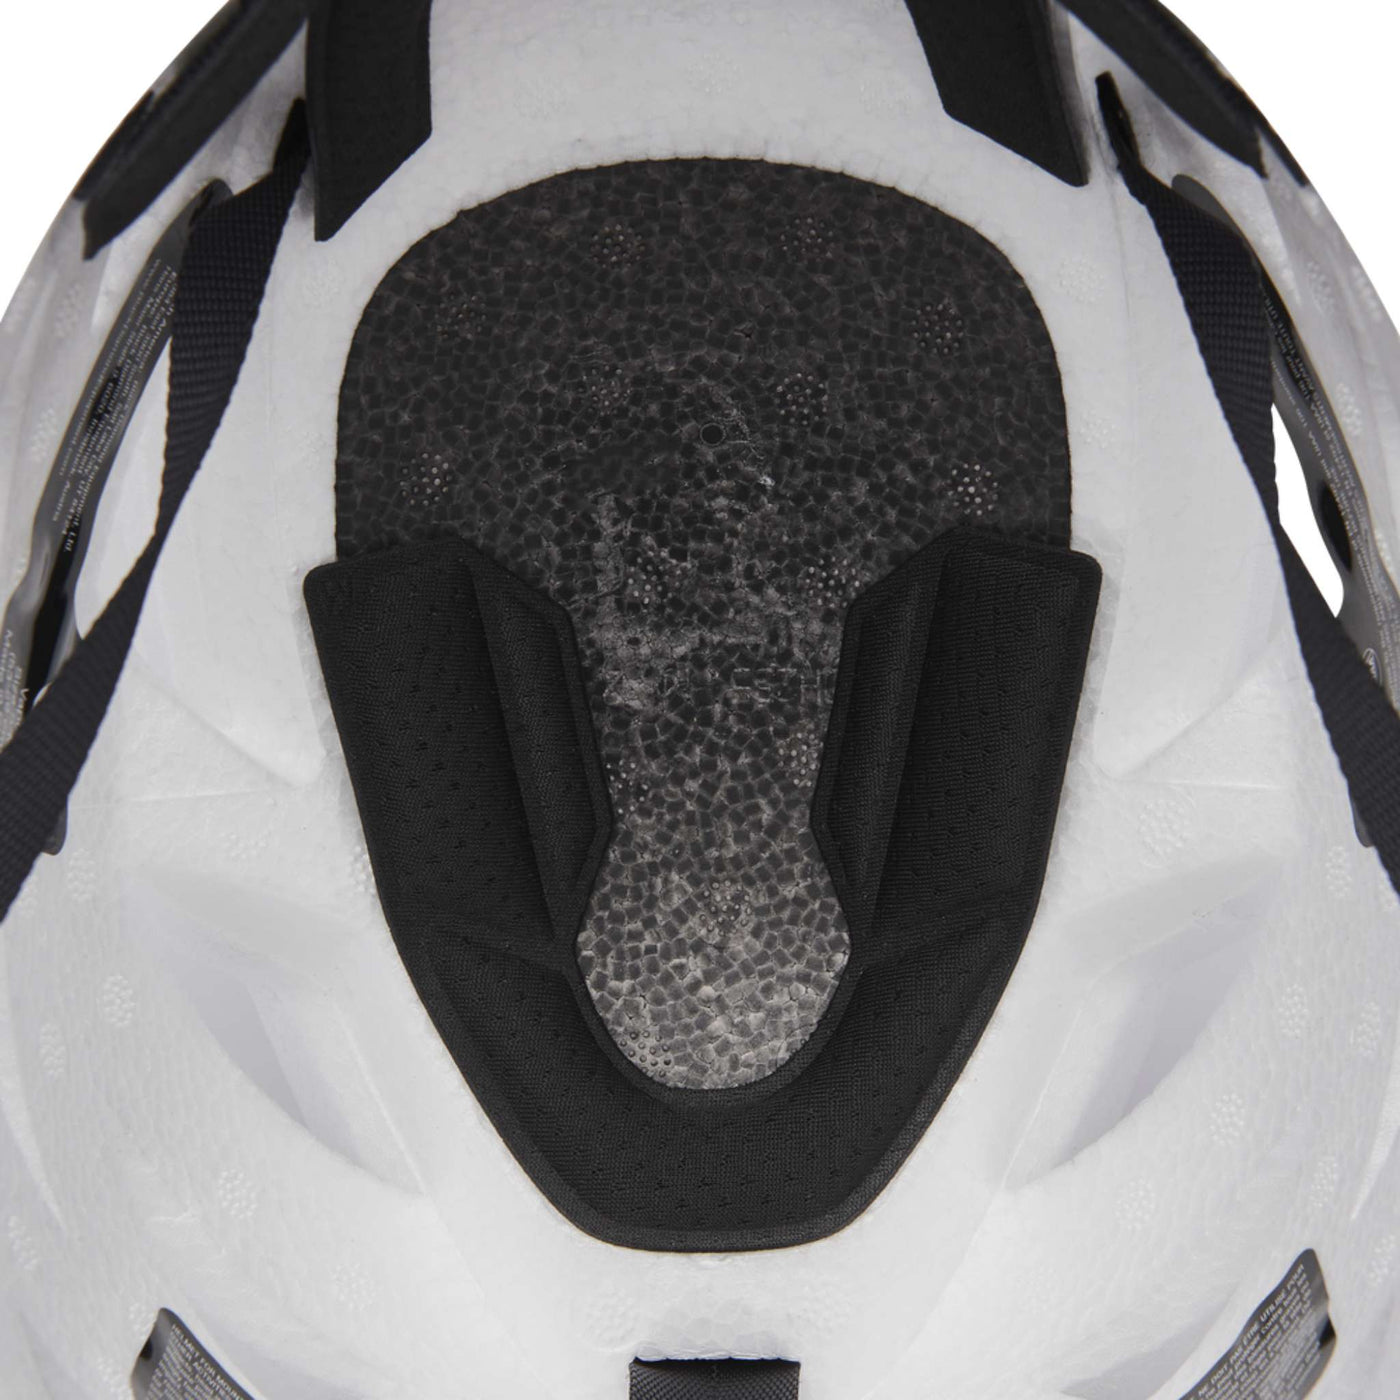 Black Diamond Vapor Helmet | Rock Climbing Helmet and Gear | Further Faster Christchurch NZ #white